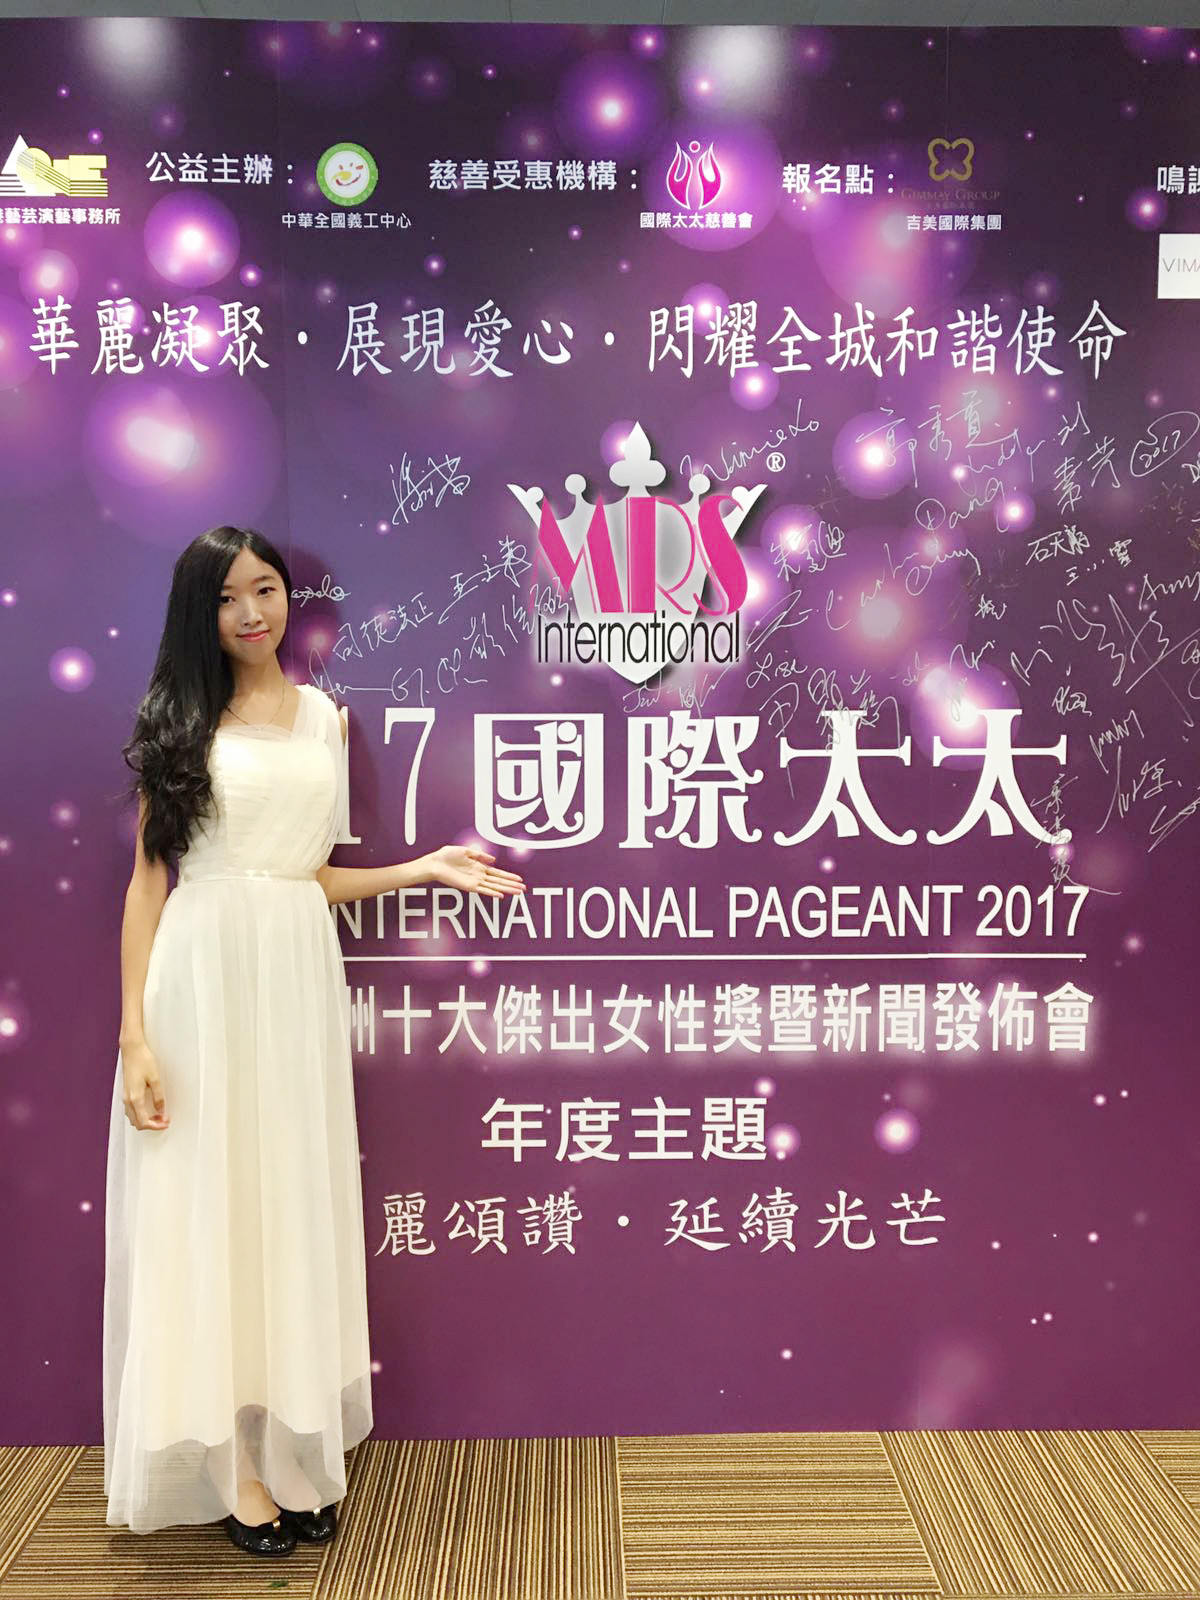 Angela劉穎斯演藝人工作紀錄: 2017國際太太選舉發佈會禮儀小姐